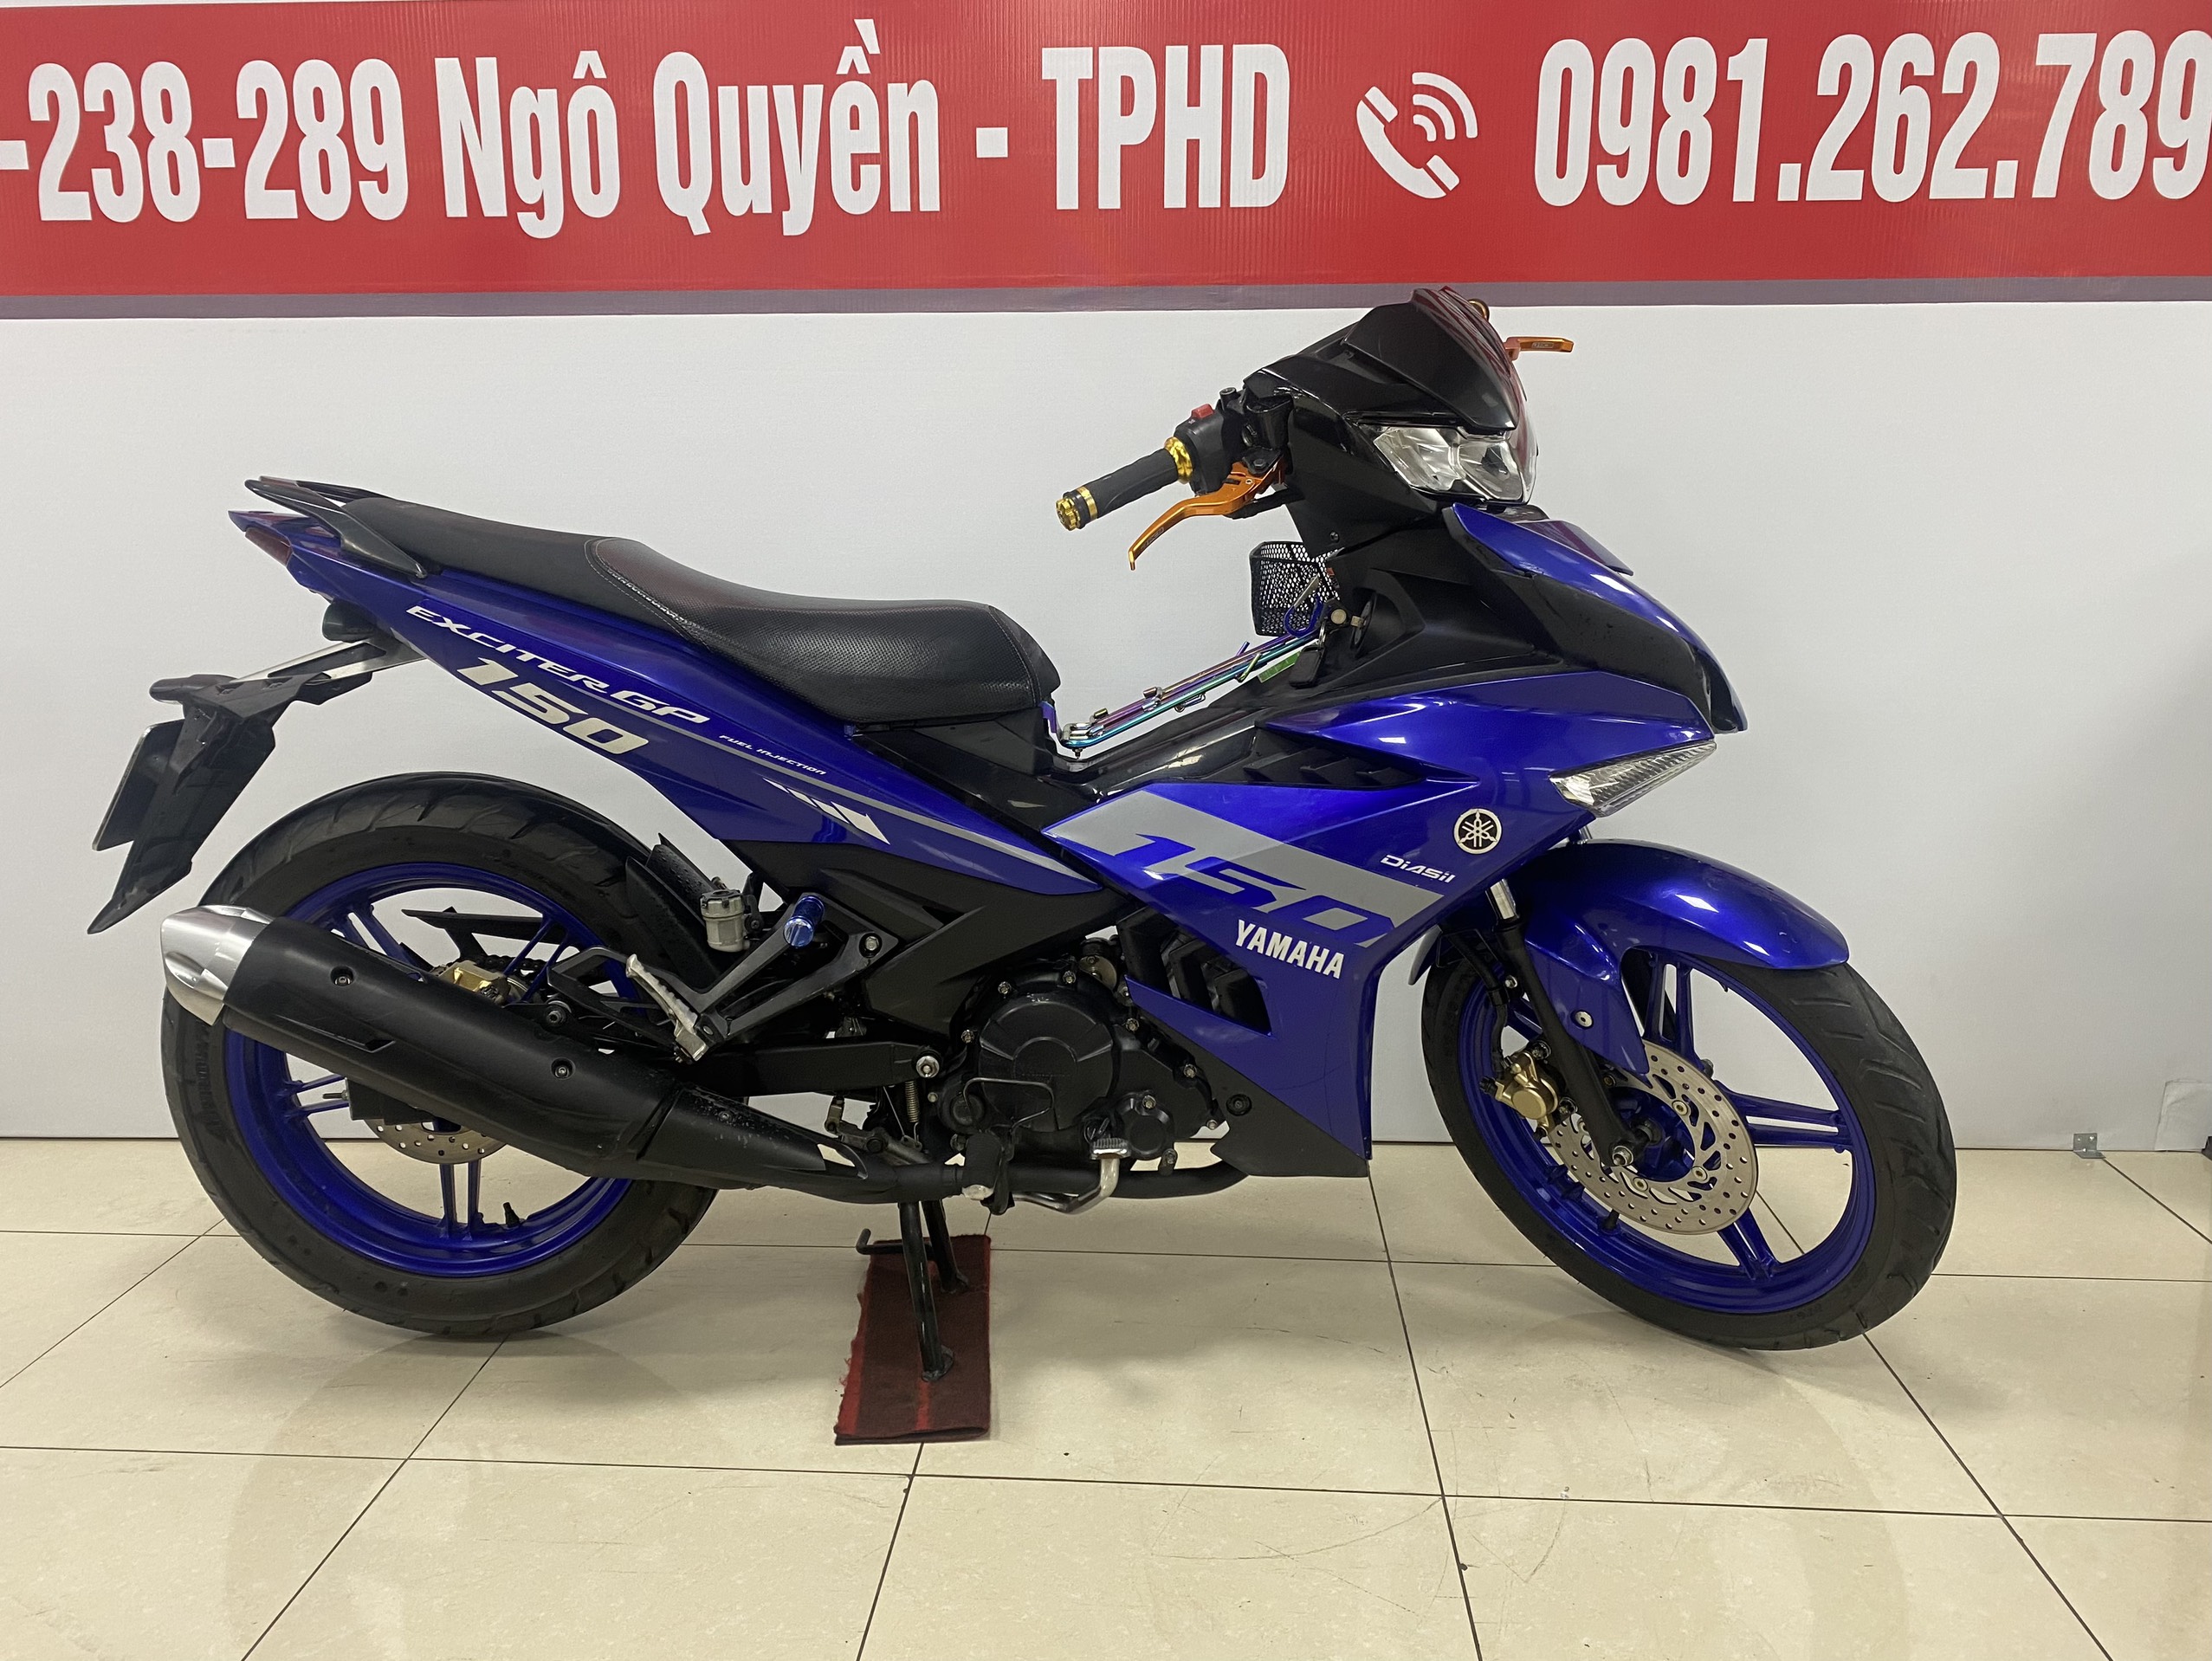 Yamaha Exciter 150 màu xanh GP đời mới 2019 ở Hà Nội giá 348tr MSP 1190203